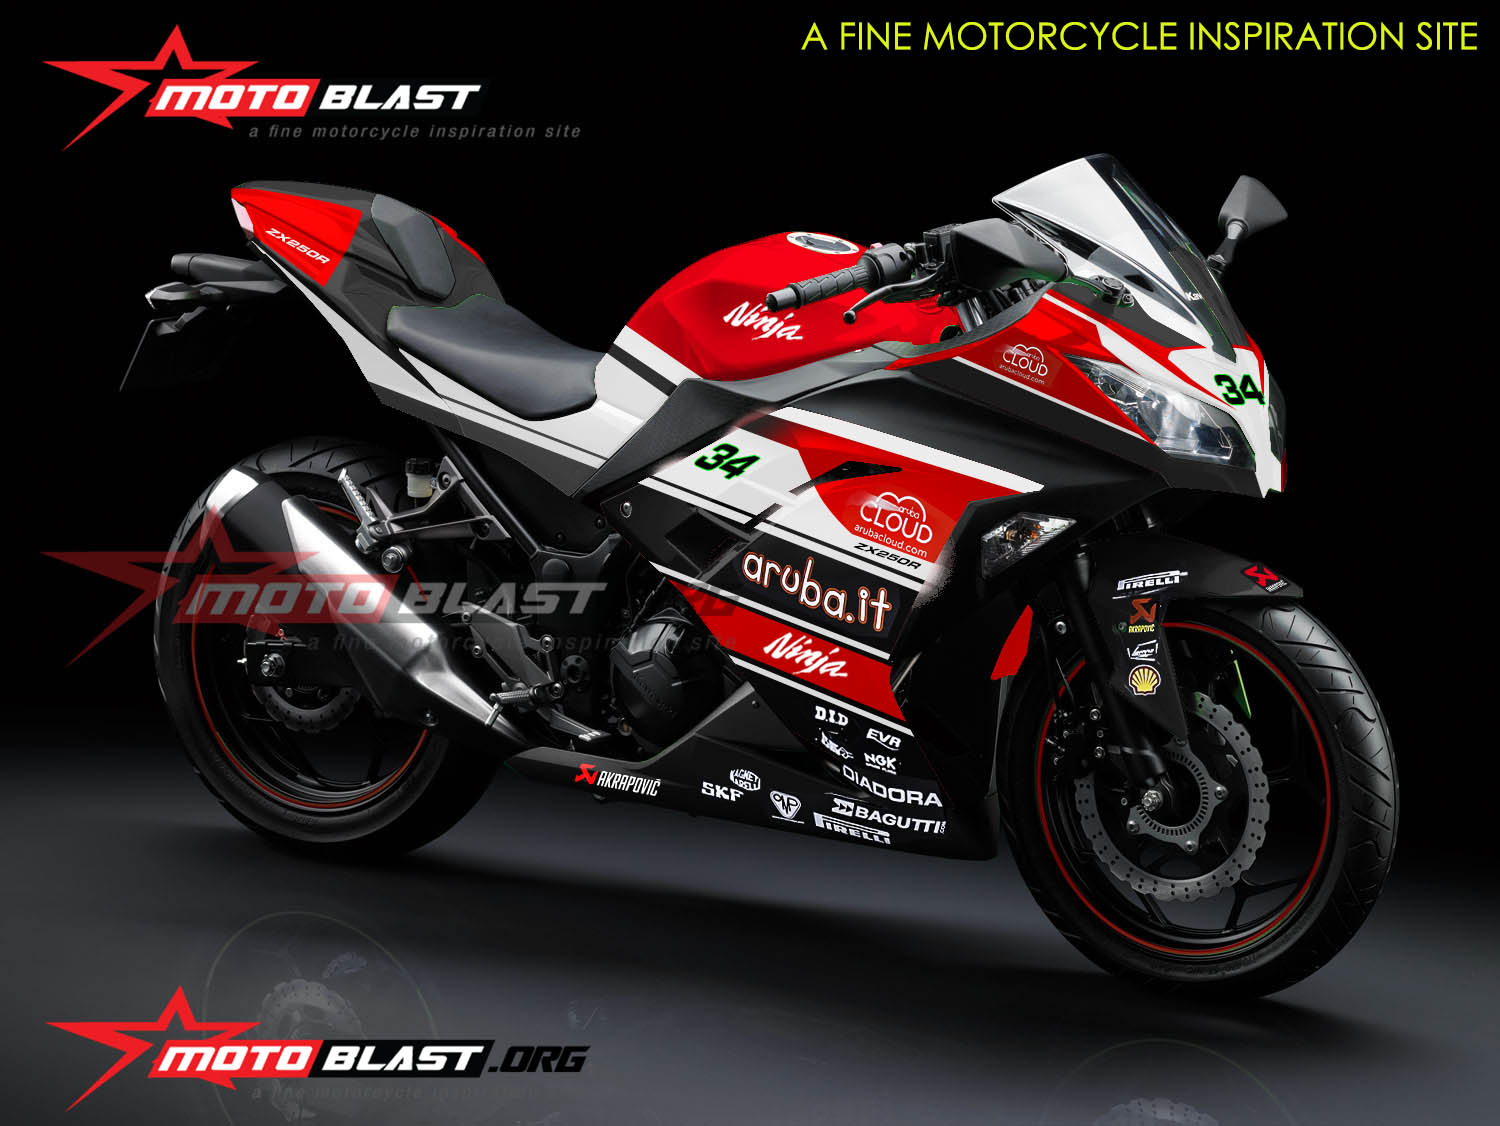 Koleksi Modif Motor Mirip Ducati Terbaru Dan Terlengkap